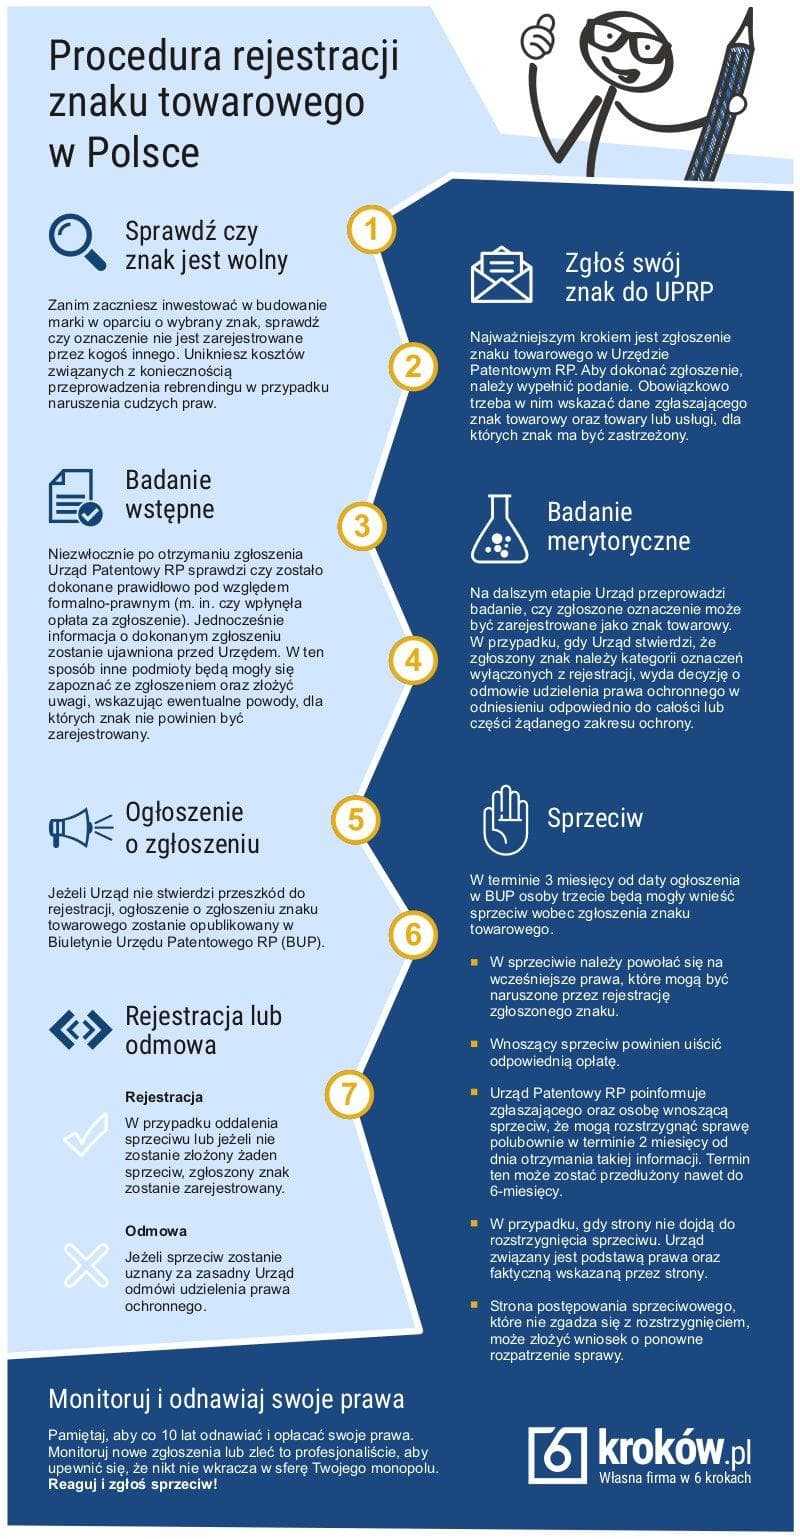 Infografika: Procedura rejestracji znaku towarowego w polskim Urzędzie Patentowym